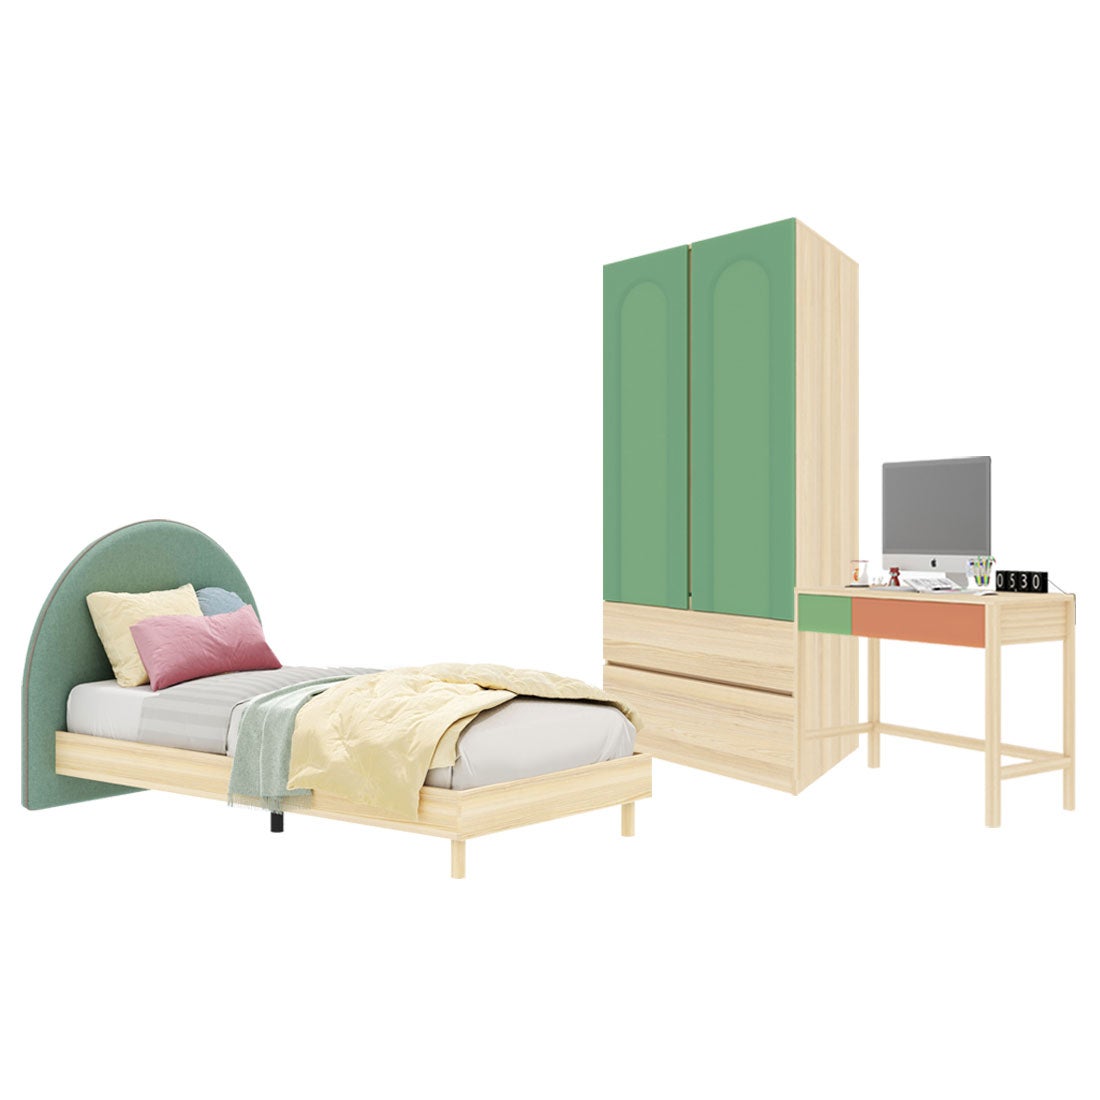 ชุดห้องนอน ขนาด 3.5 ฟุต-เบาะเขียว รุ่น Bingsoo & ตู้เสื้อผ้าลิ้นชัก 90 ซม. พร้อมตู้ข้างเตียง สีเขียว01